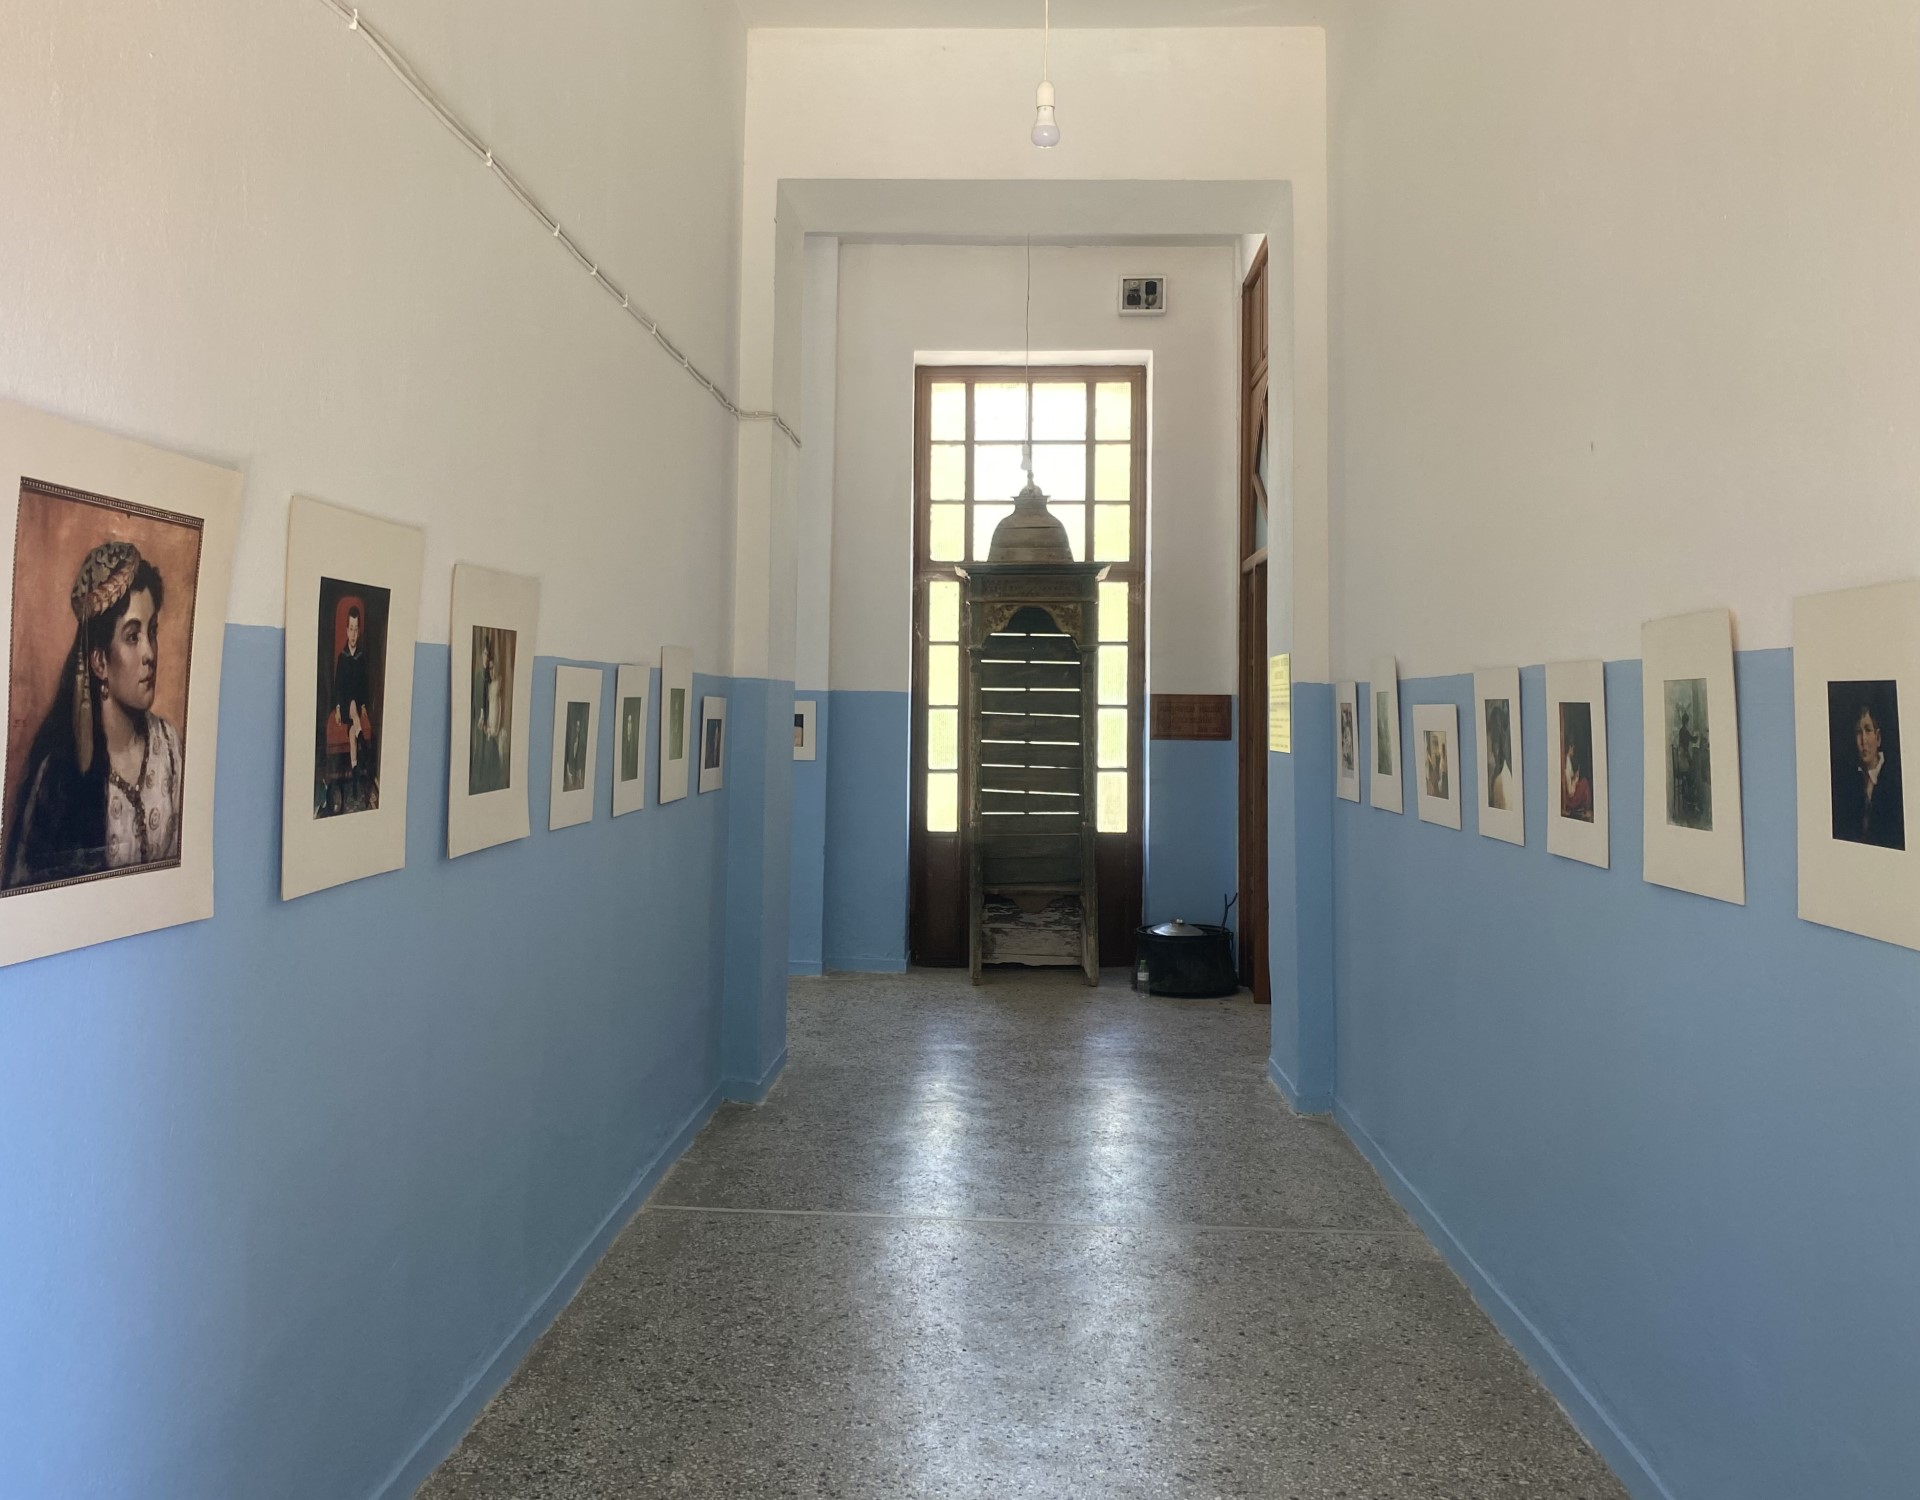 Έκθεση επιλεγμένων αντιγράφων από εμβληματικά έργα της Συλλογής Κατσίγρα στο δημοτικό σχολείο της Ανατολής Αγιάς